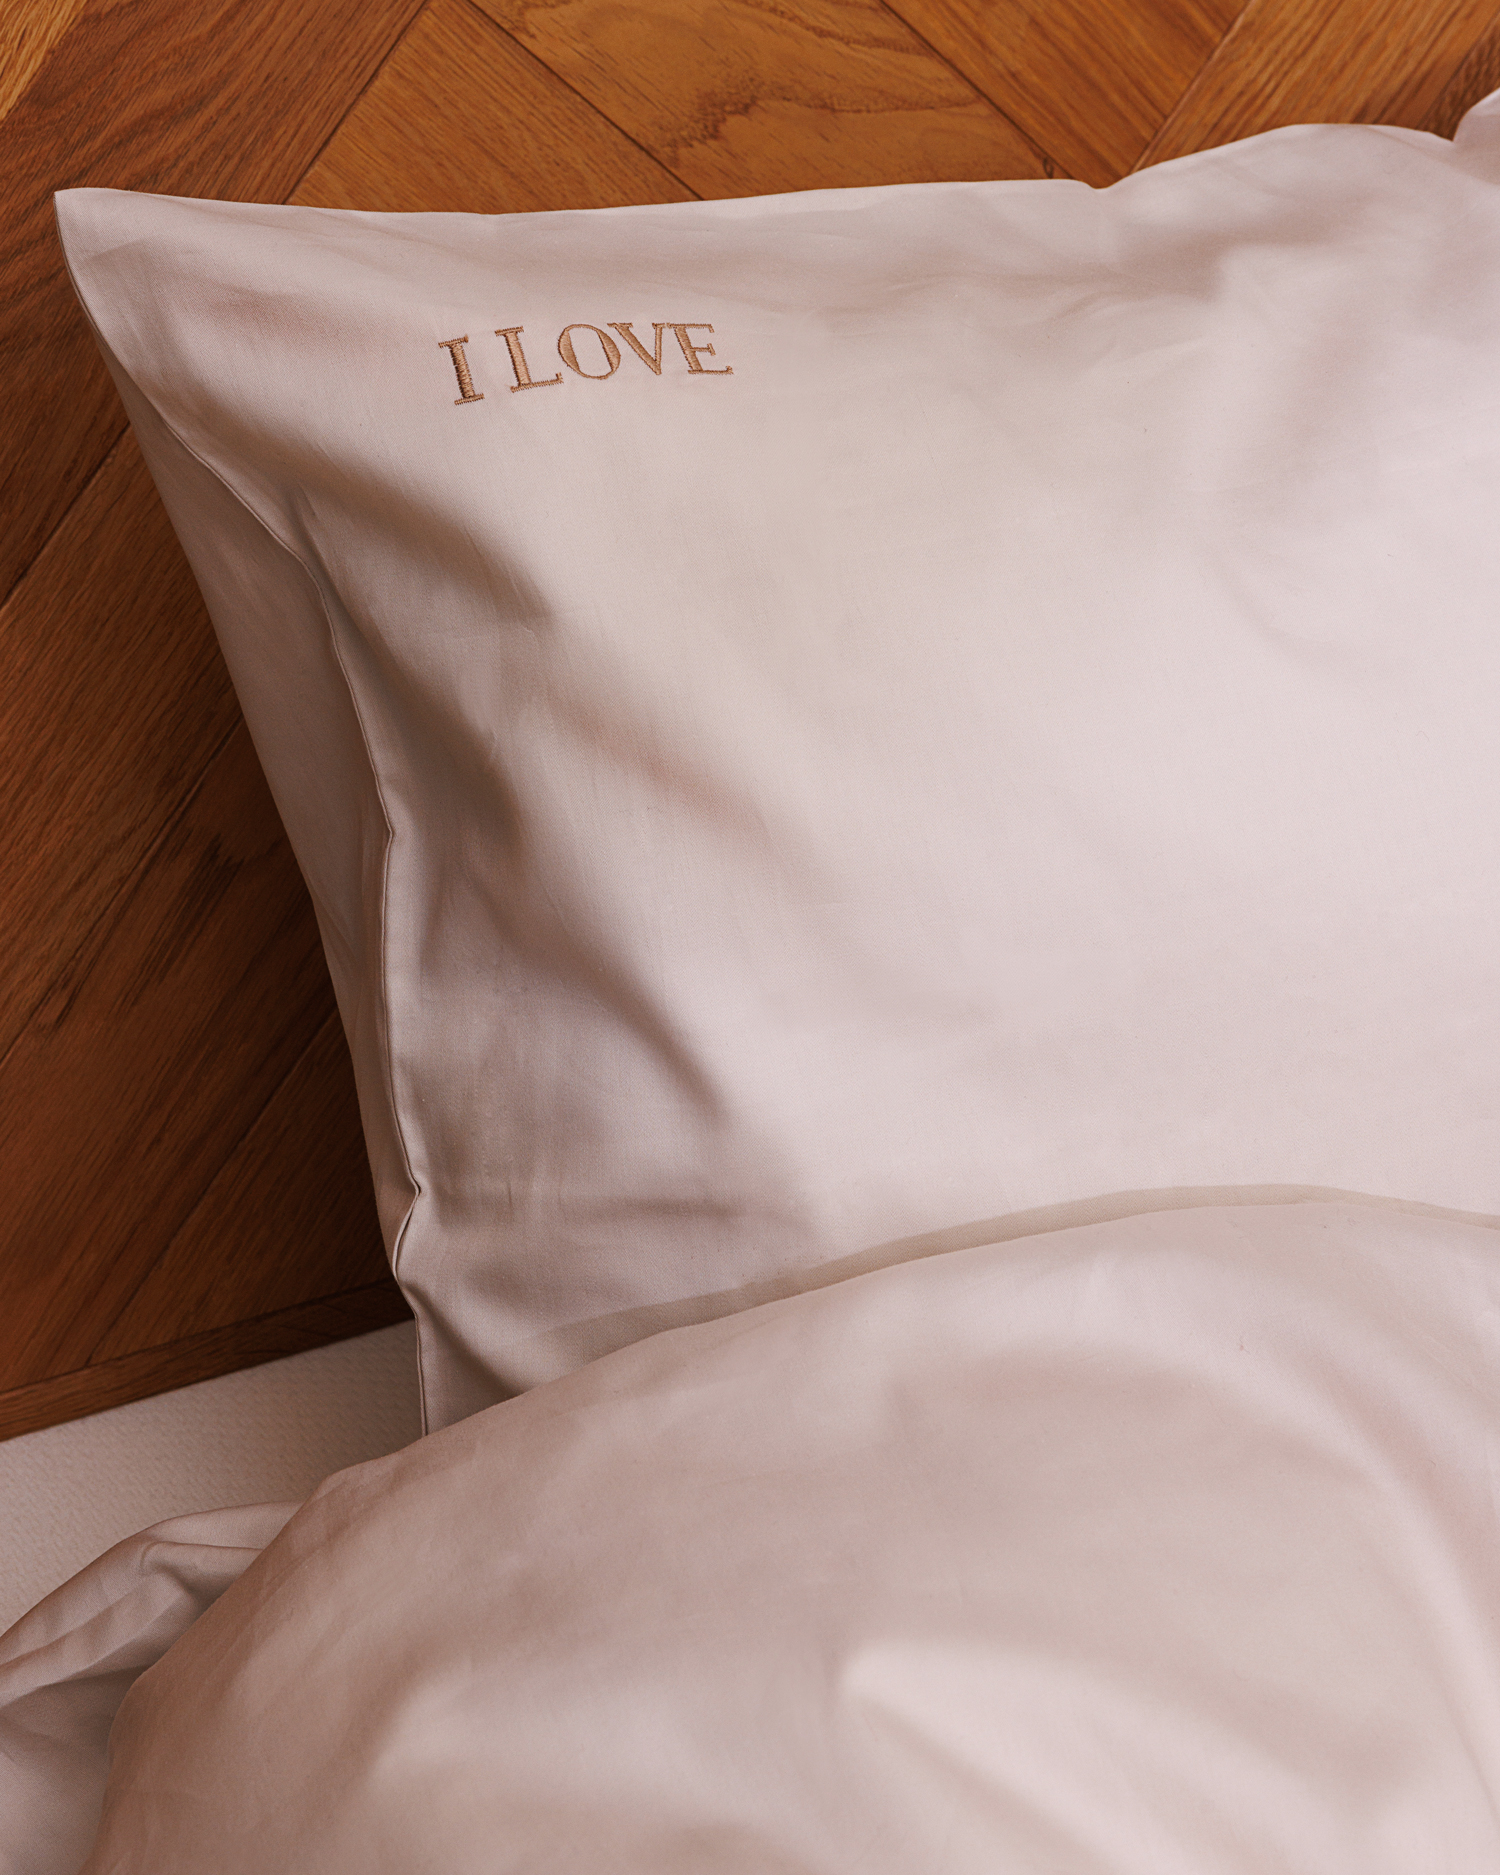 Luxury cotton pillow case, bed linen